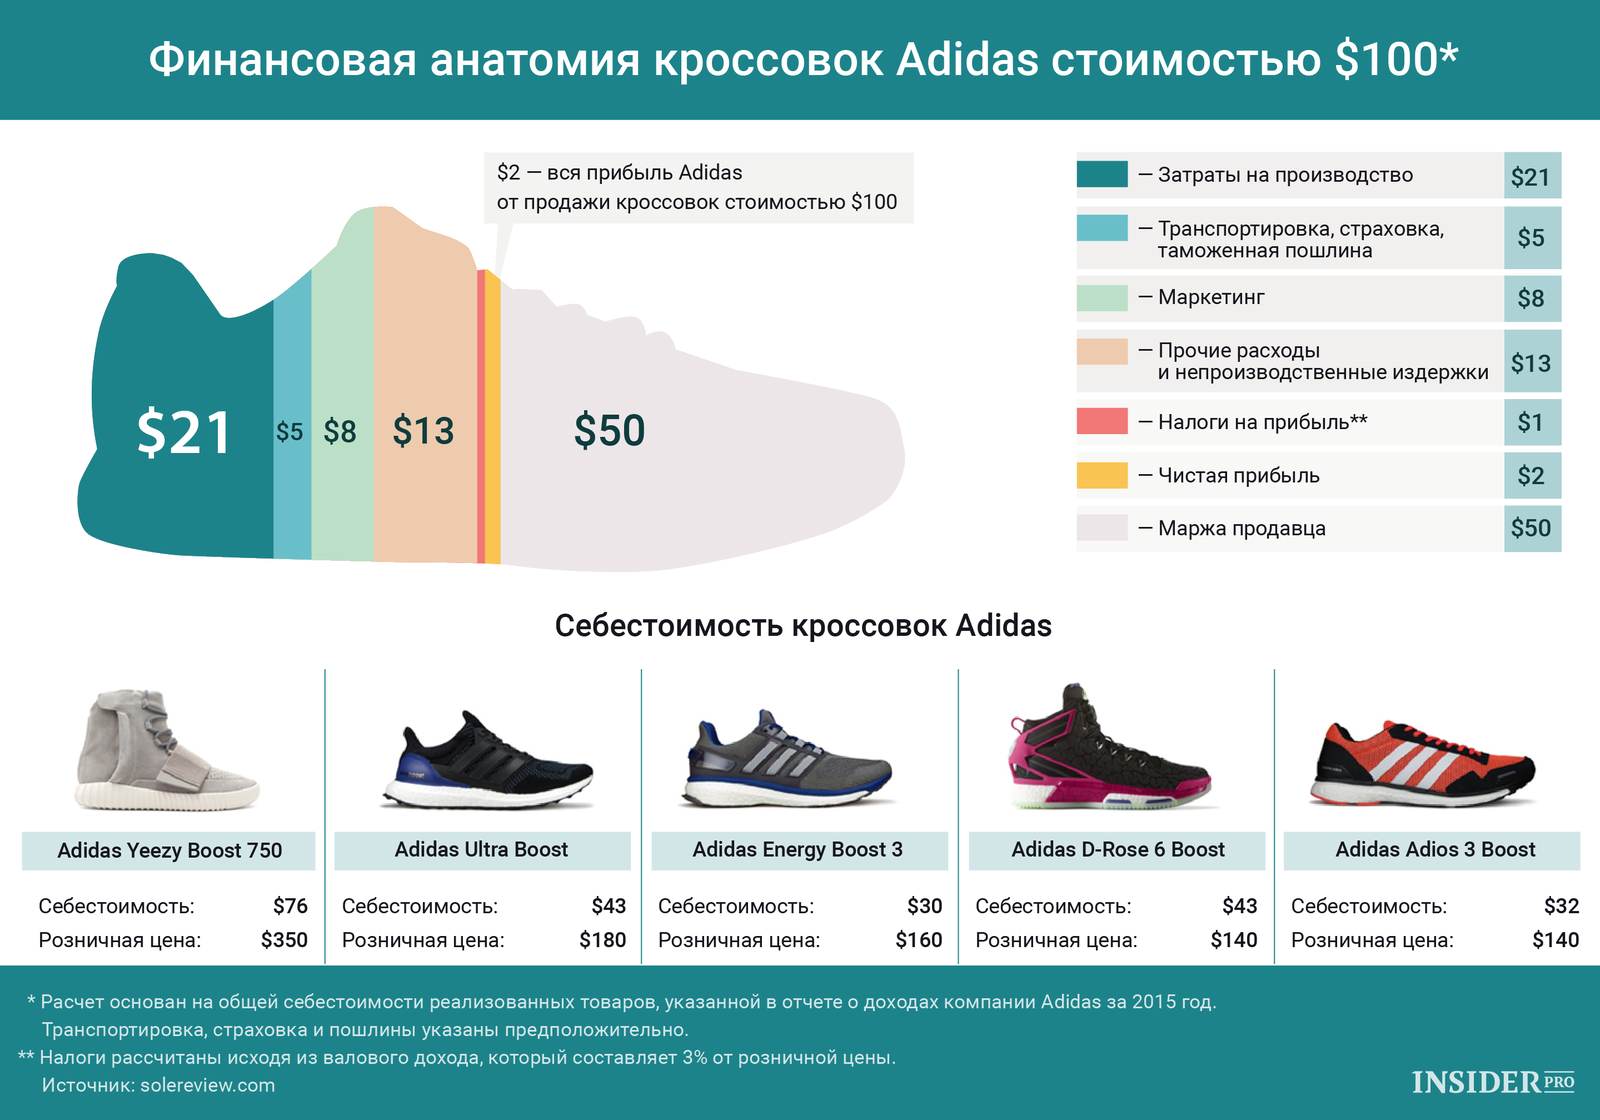 Самые дорогие кроссовки на рынке перепродажи в 2020 году | rusbase